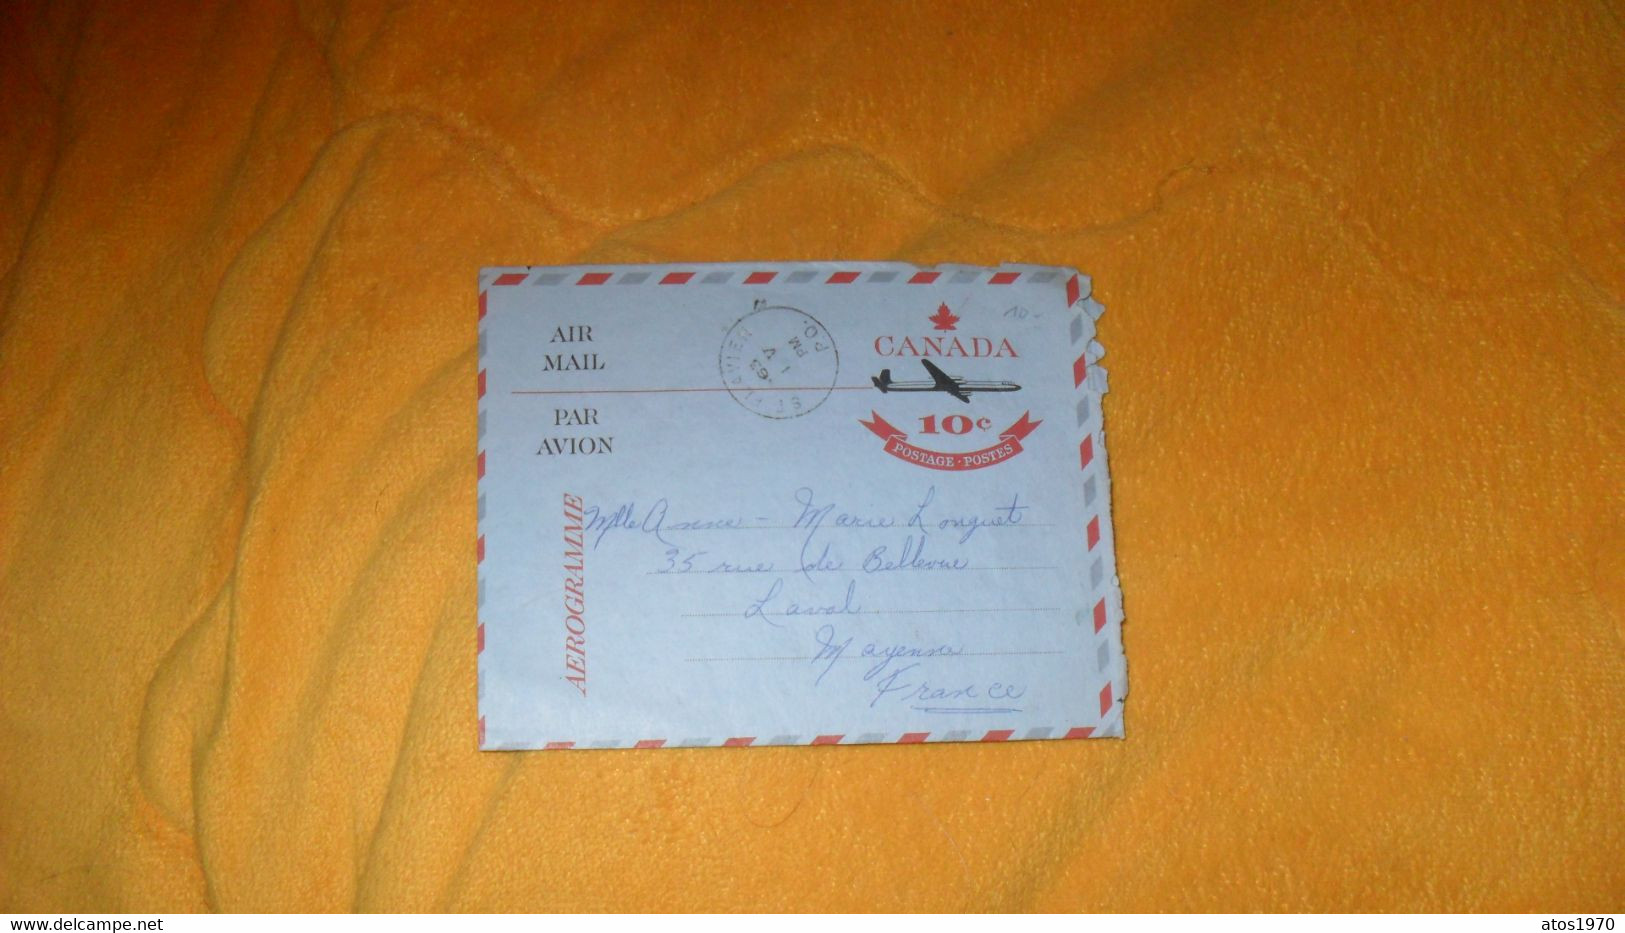 LETTRE ANCIENNE AEROGRAMME DE 1963../ CANADA 10C POSTAGE POSTES..CACHET ST FLAVIEN CANADA POUR LAVAL FRANCE - Lettres & Documents